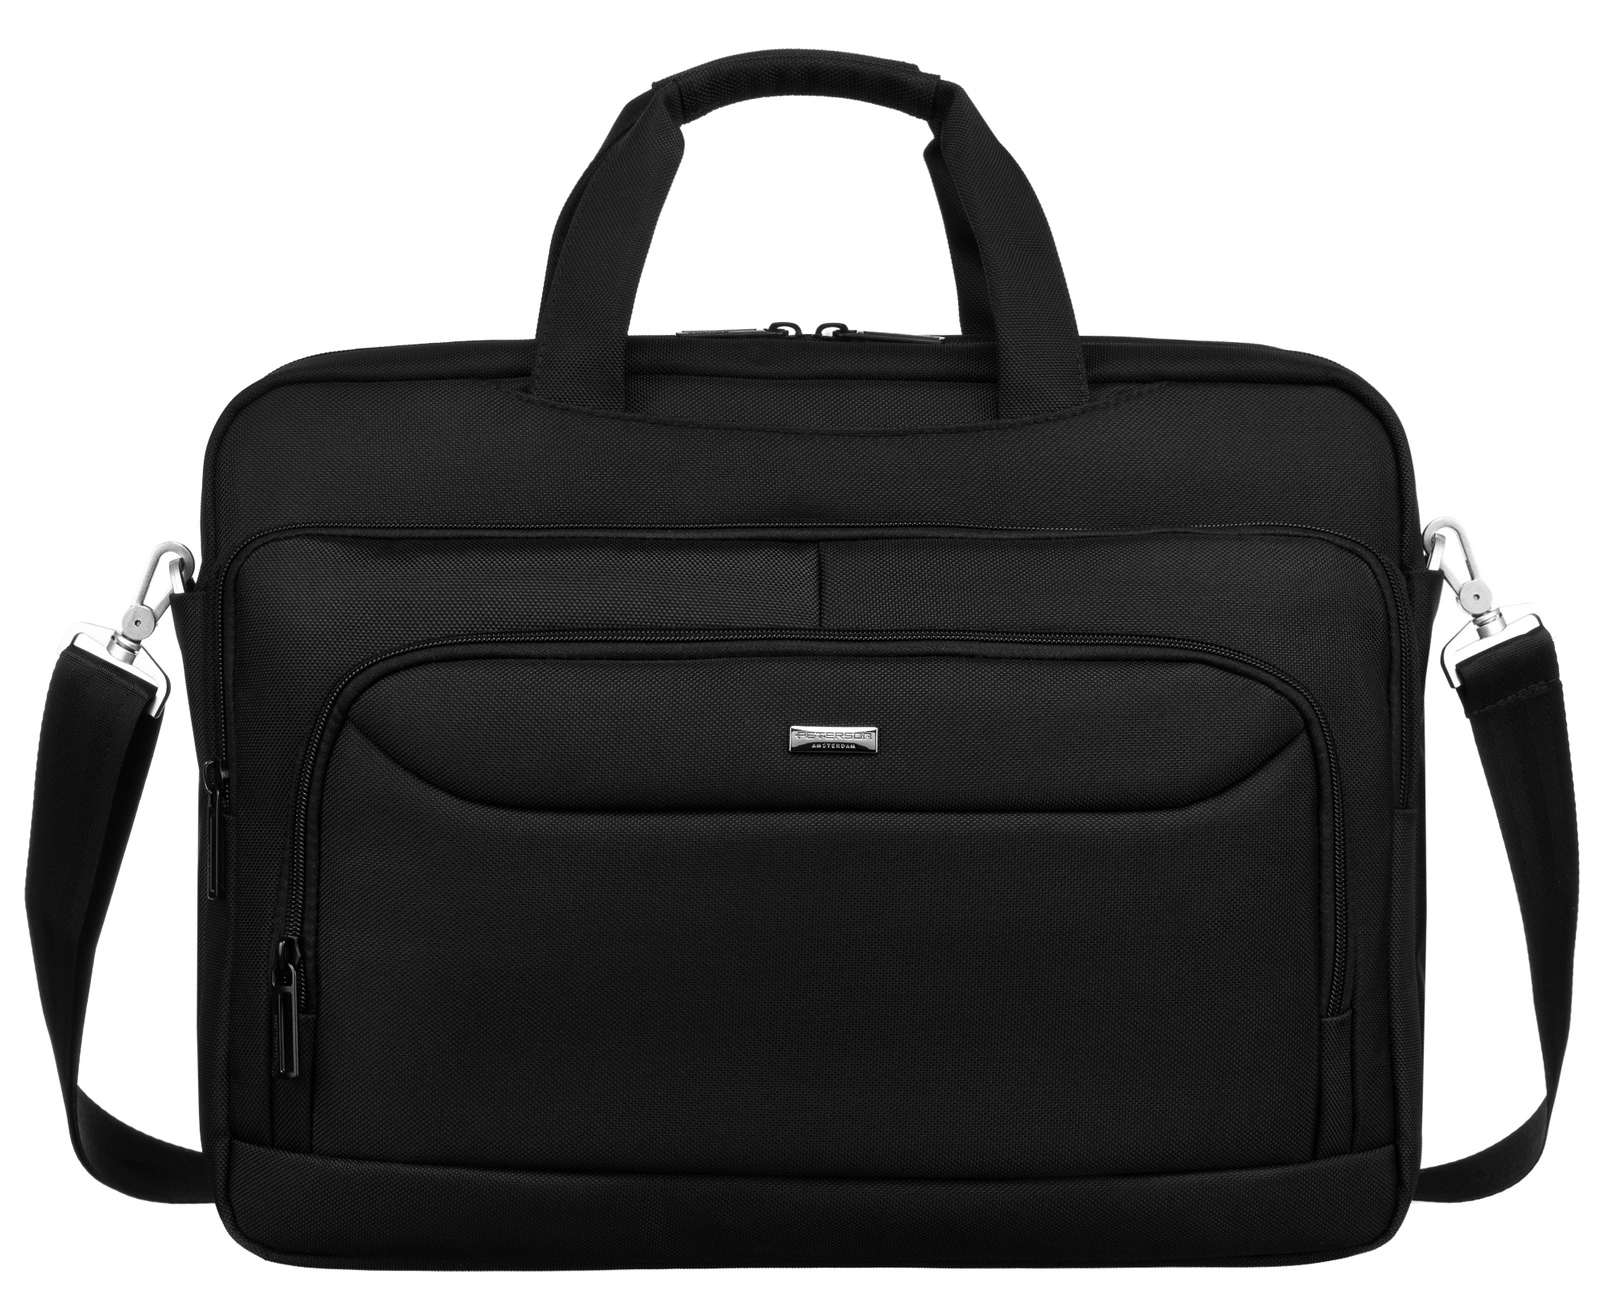 Peterson Cestovní taška Shreattu černá One size